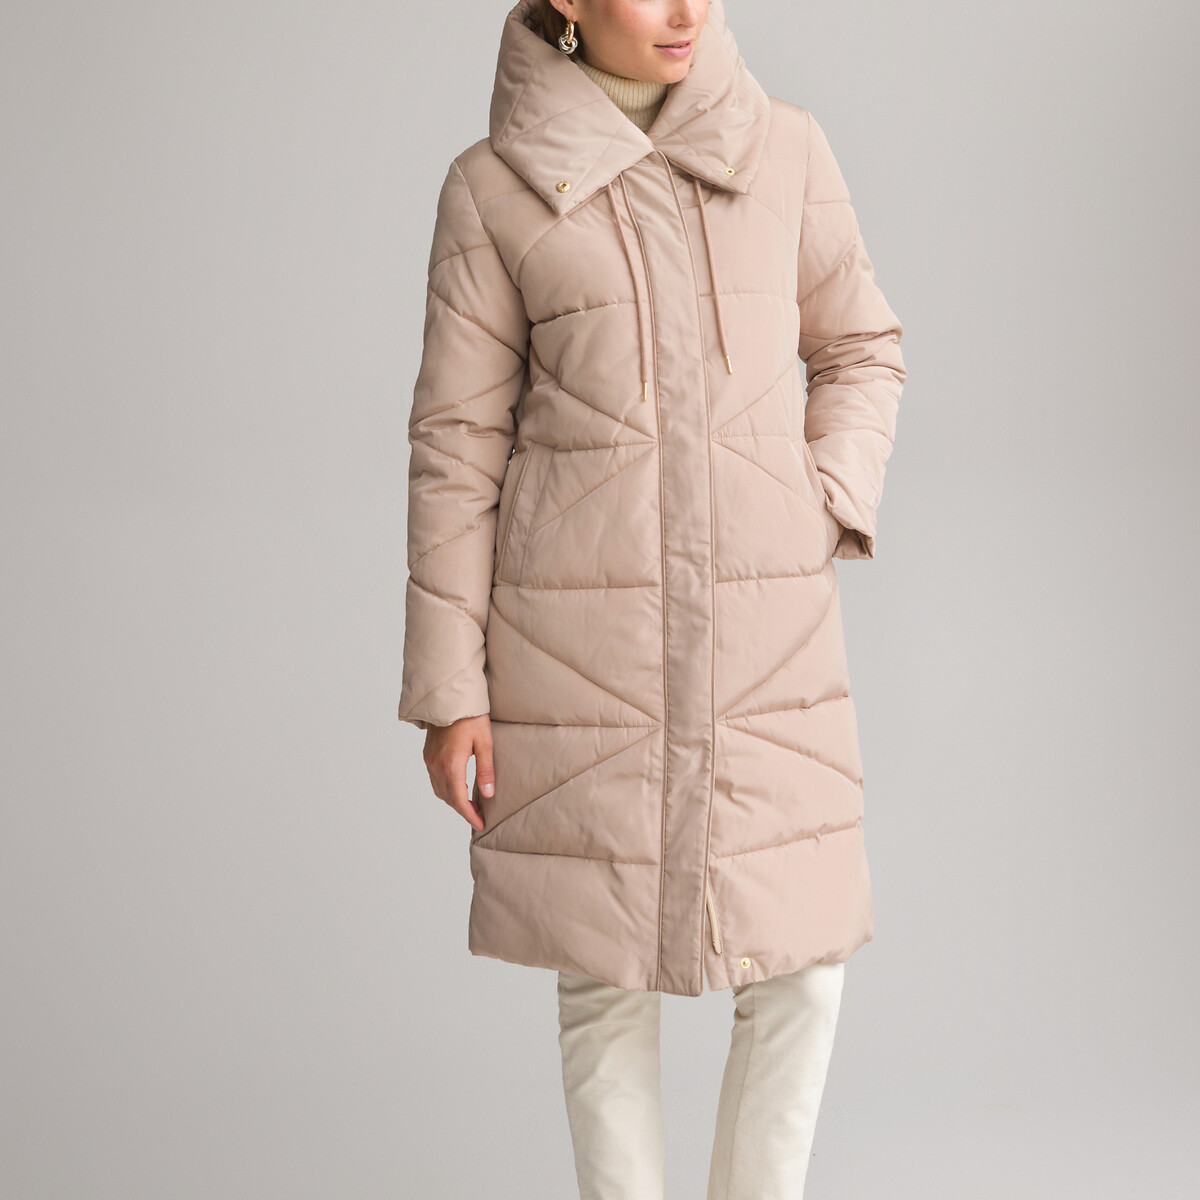 Стеганая куртка средней длины с капюшоном зимняя модель 54 (FR) - 60 (RUS) бежевый куртка стеганая средней длины с пришитым капюшоном зимняя l черный